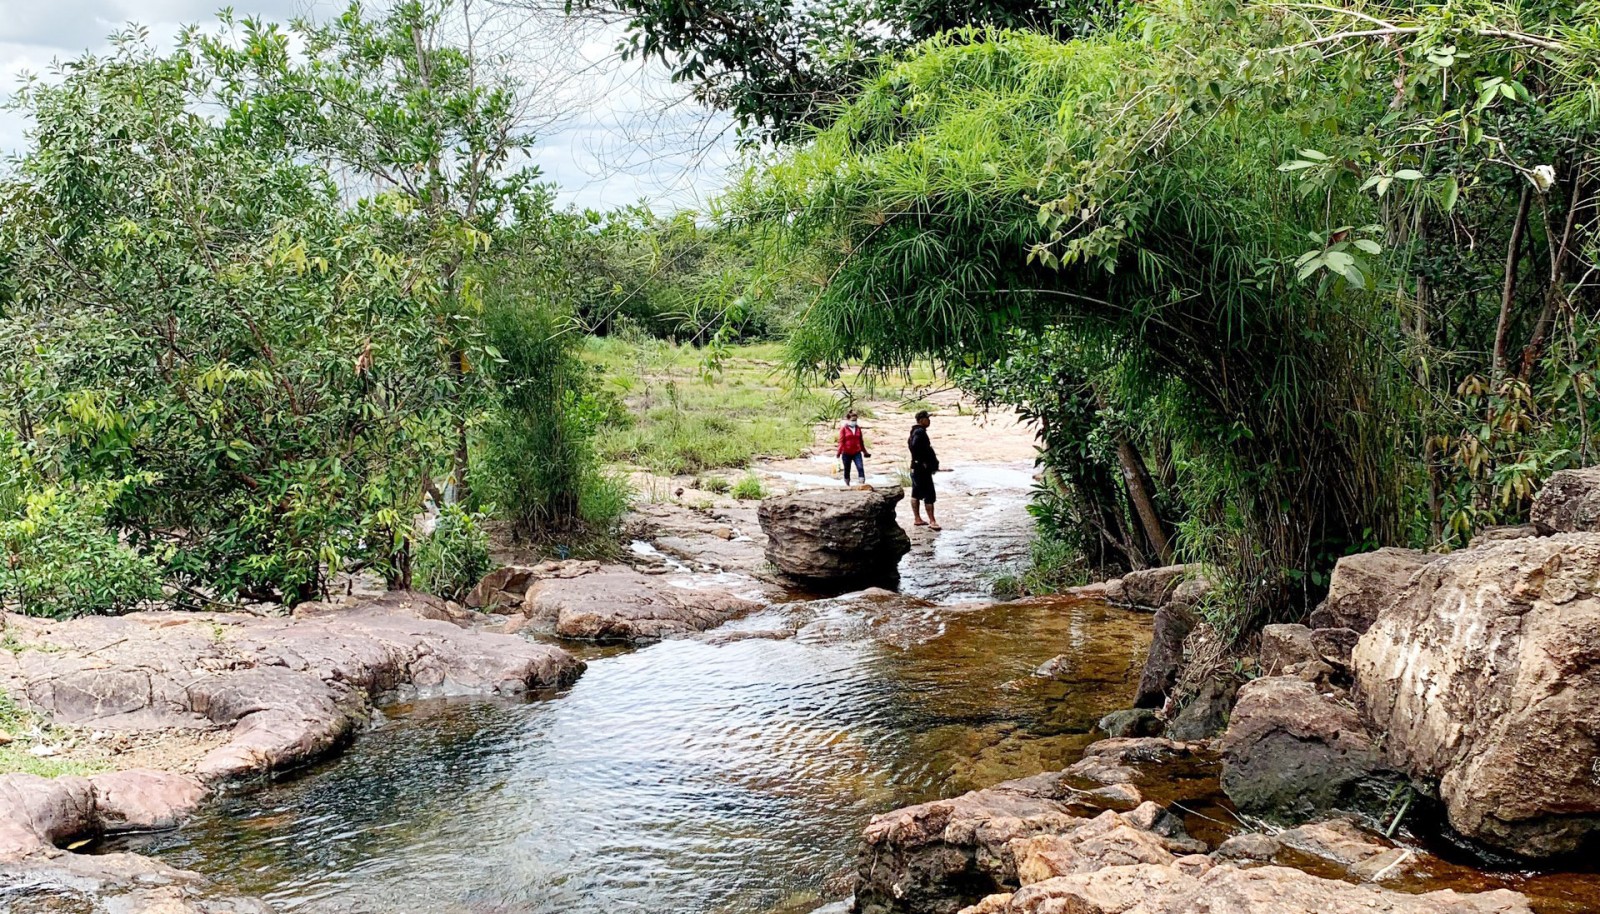 Vô một khu rừng nổi tiếng ở Bình Dương thấy dòng suối đẹp như phim, tên suối, tên cây rừng y chang nhau- Ảnh 2.